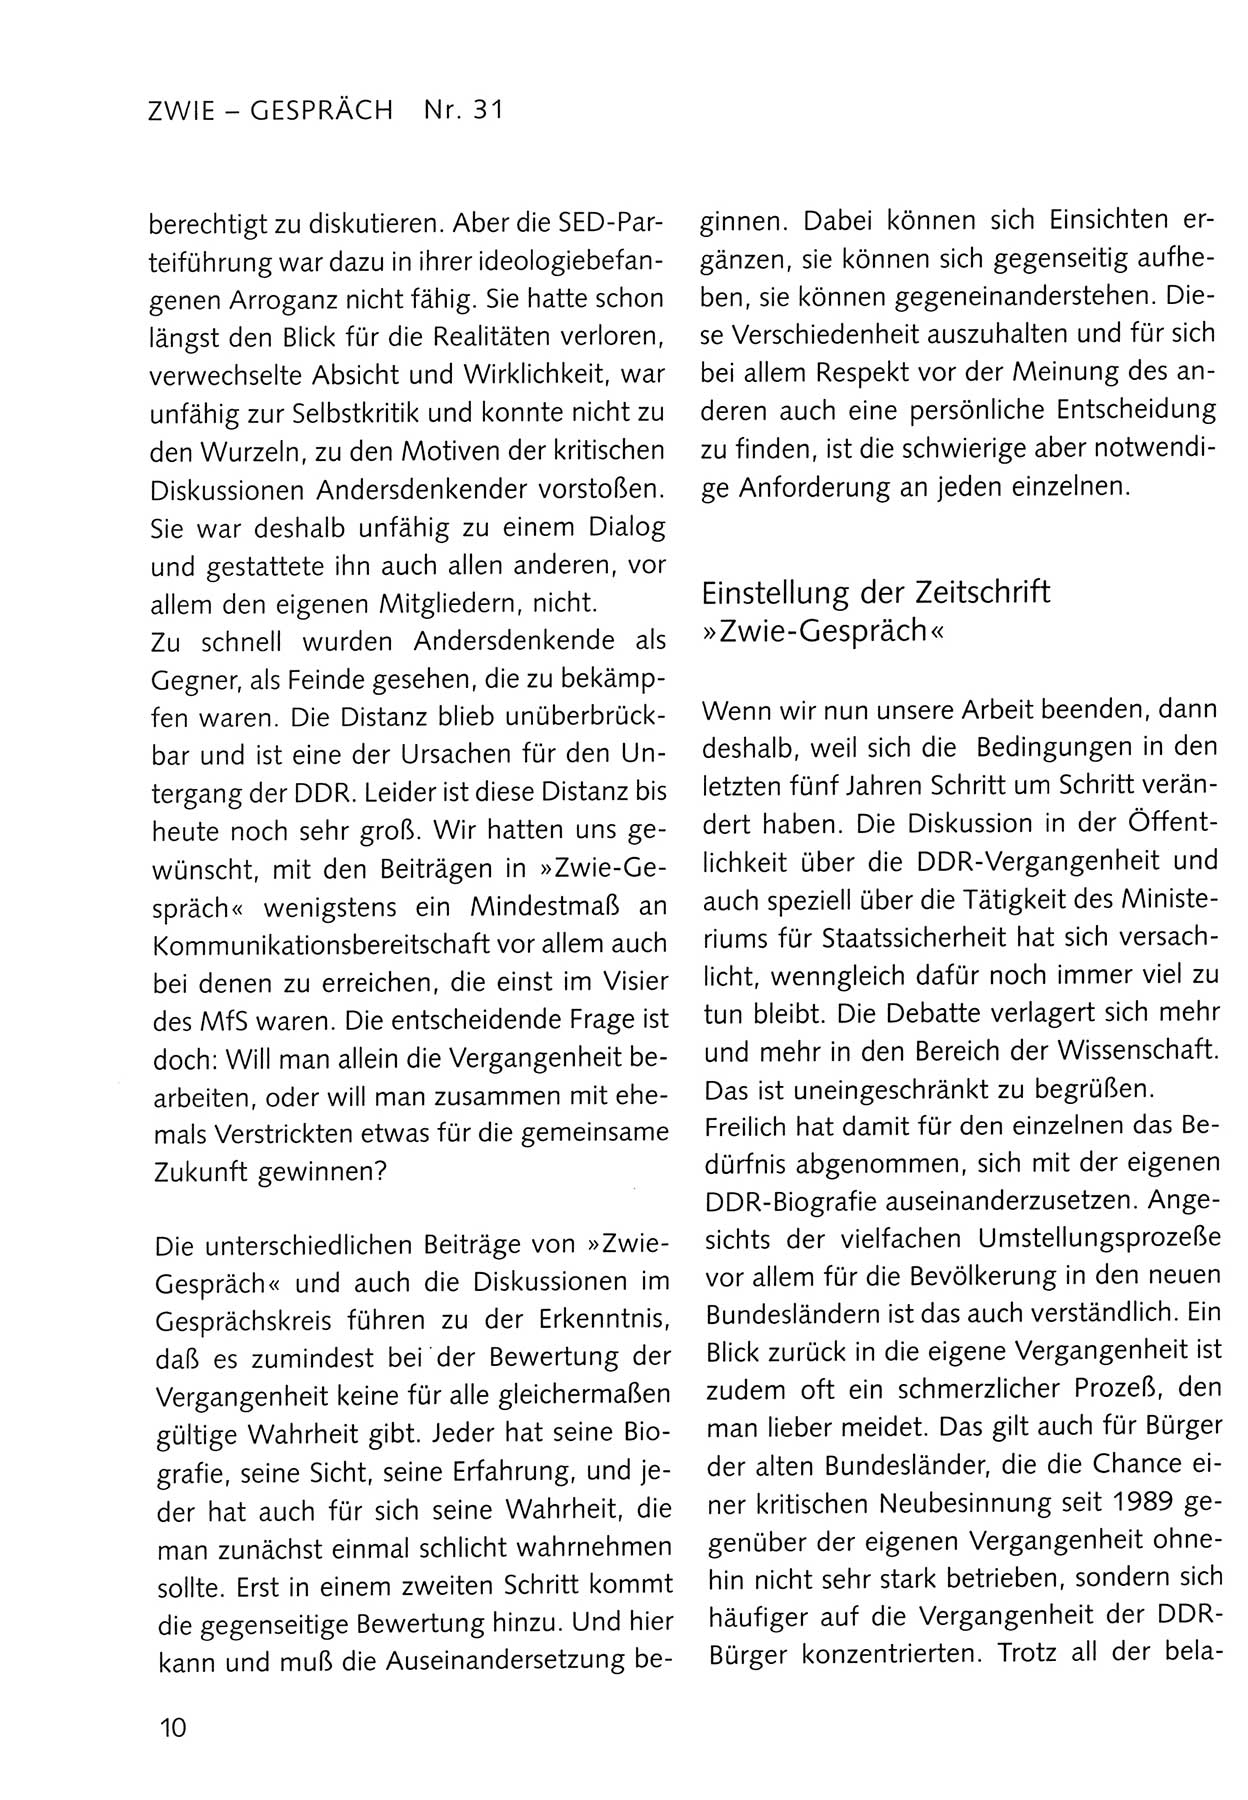 Zwie-Gespräch, Beiträge zum Umgang mit der Staatssicherheits-Vergangenheit [Deutsche Demokratische Republik (DDR)], Ausgabe Nr. 31, Berlin 1995, Seite 10 (Zwie-Gespr. Ausg. 31 1995, S. 10)